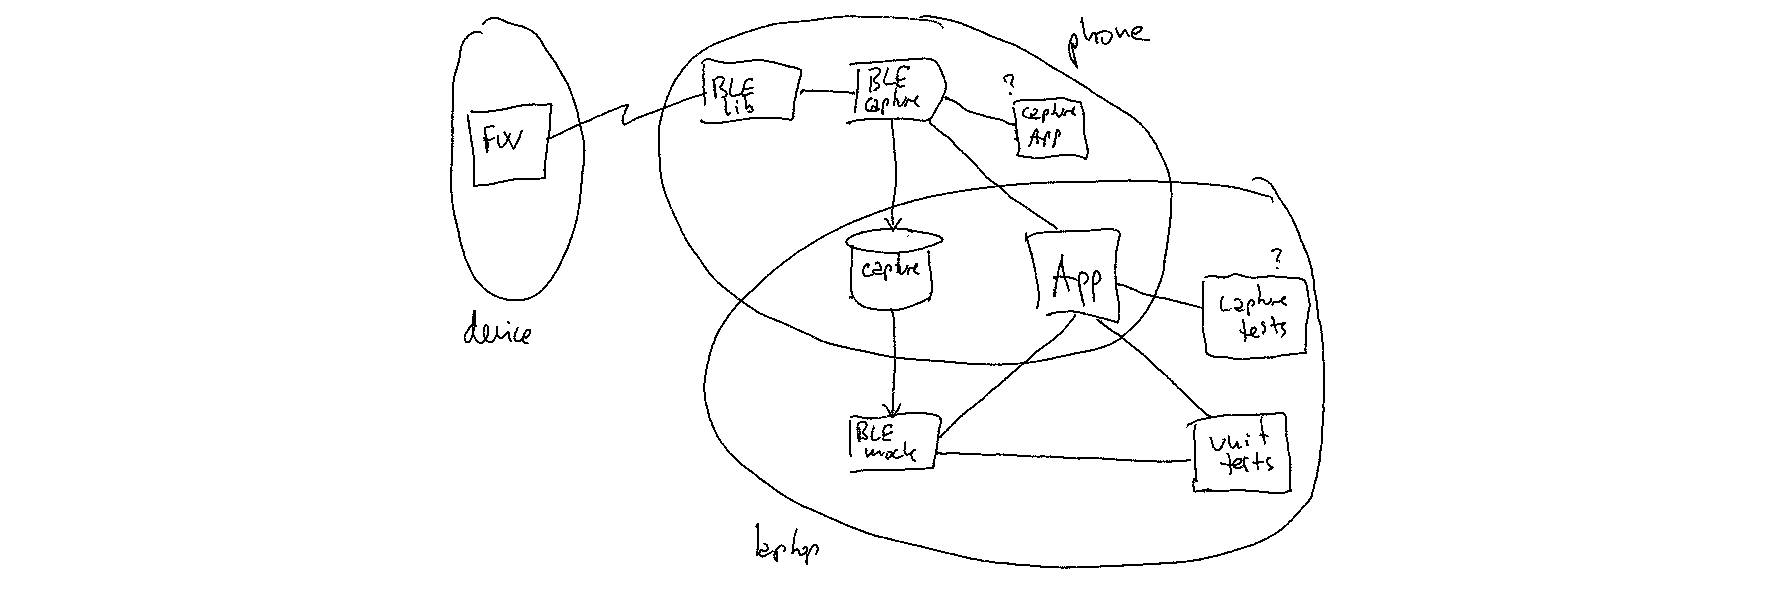 BLE auto-mocking diagram